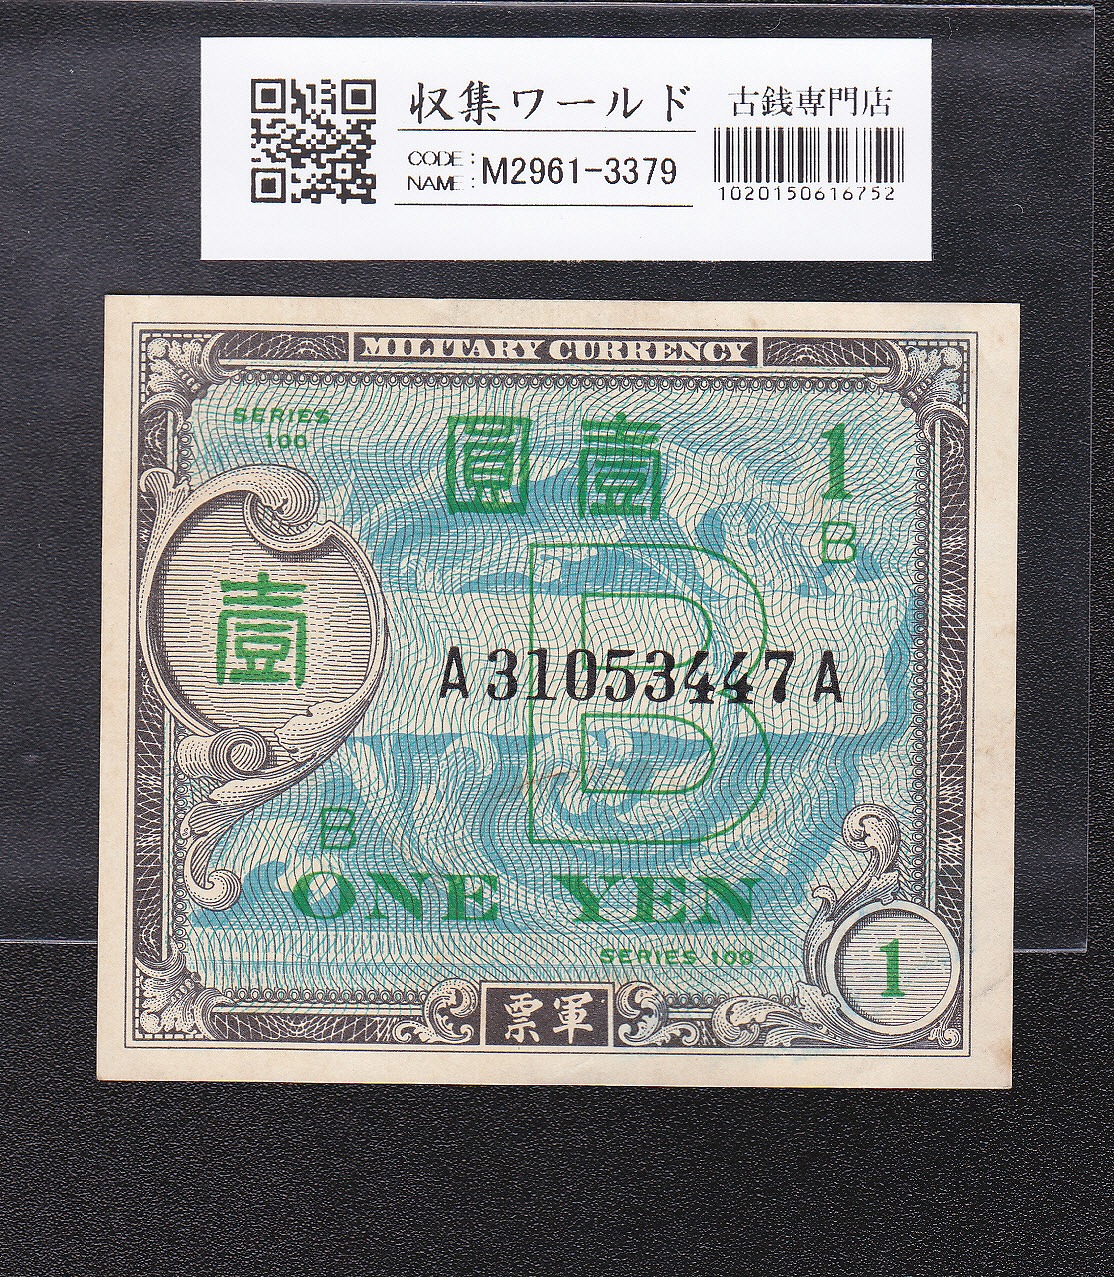 在日米軍軍票 B1円券 1945年発行(昭和20年) A31053447A 準未品